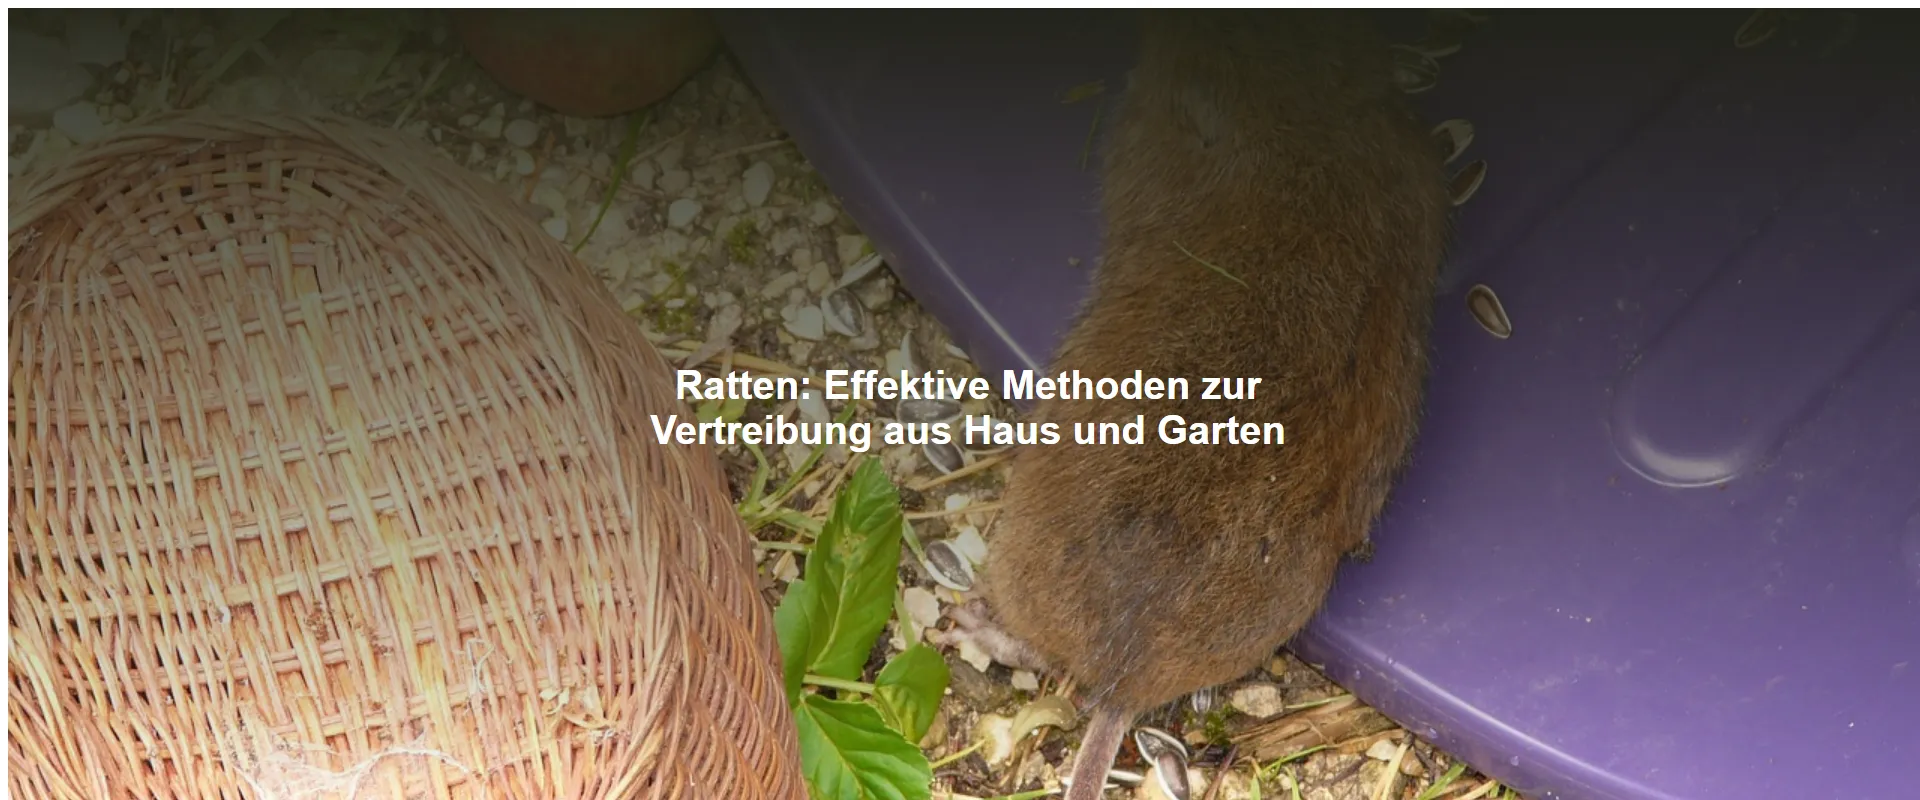 Ratten – Effektive Methoden zur Vertreibung aus Haus und Garten